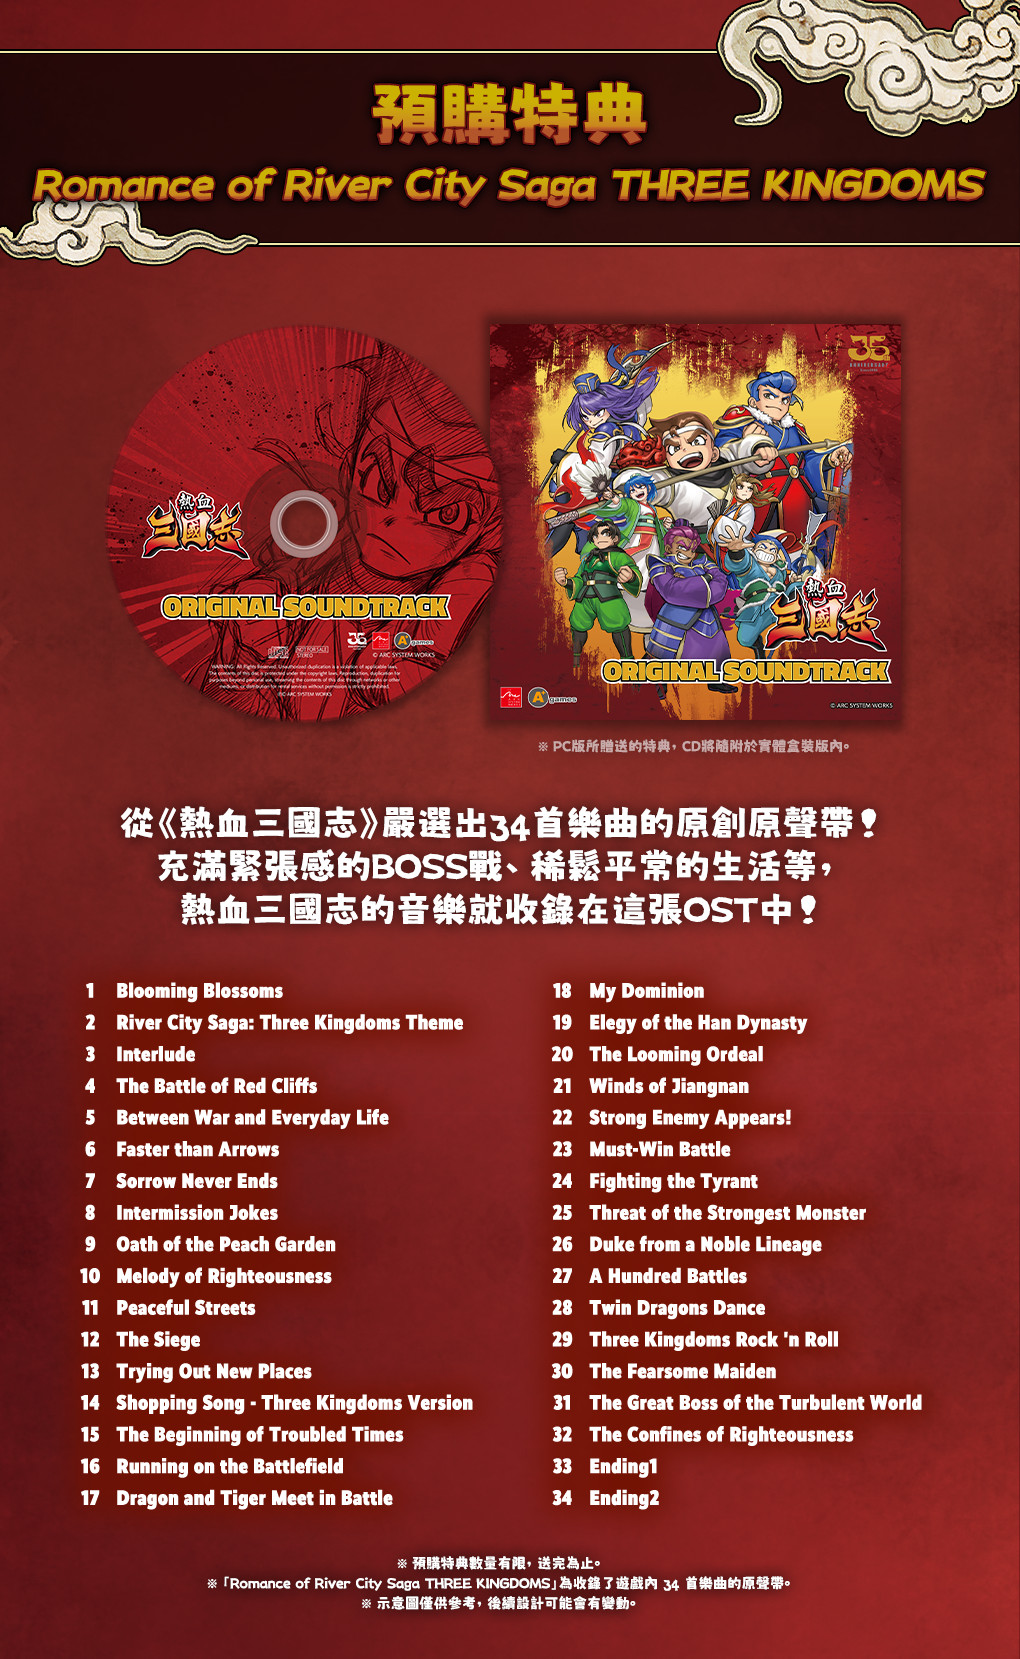 《熱血三國志》中文版公開實體版預售相關資訊